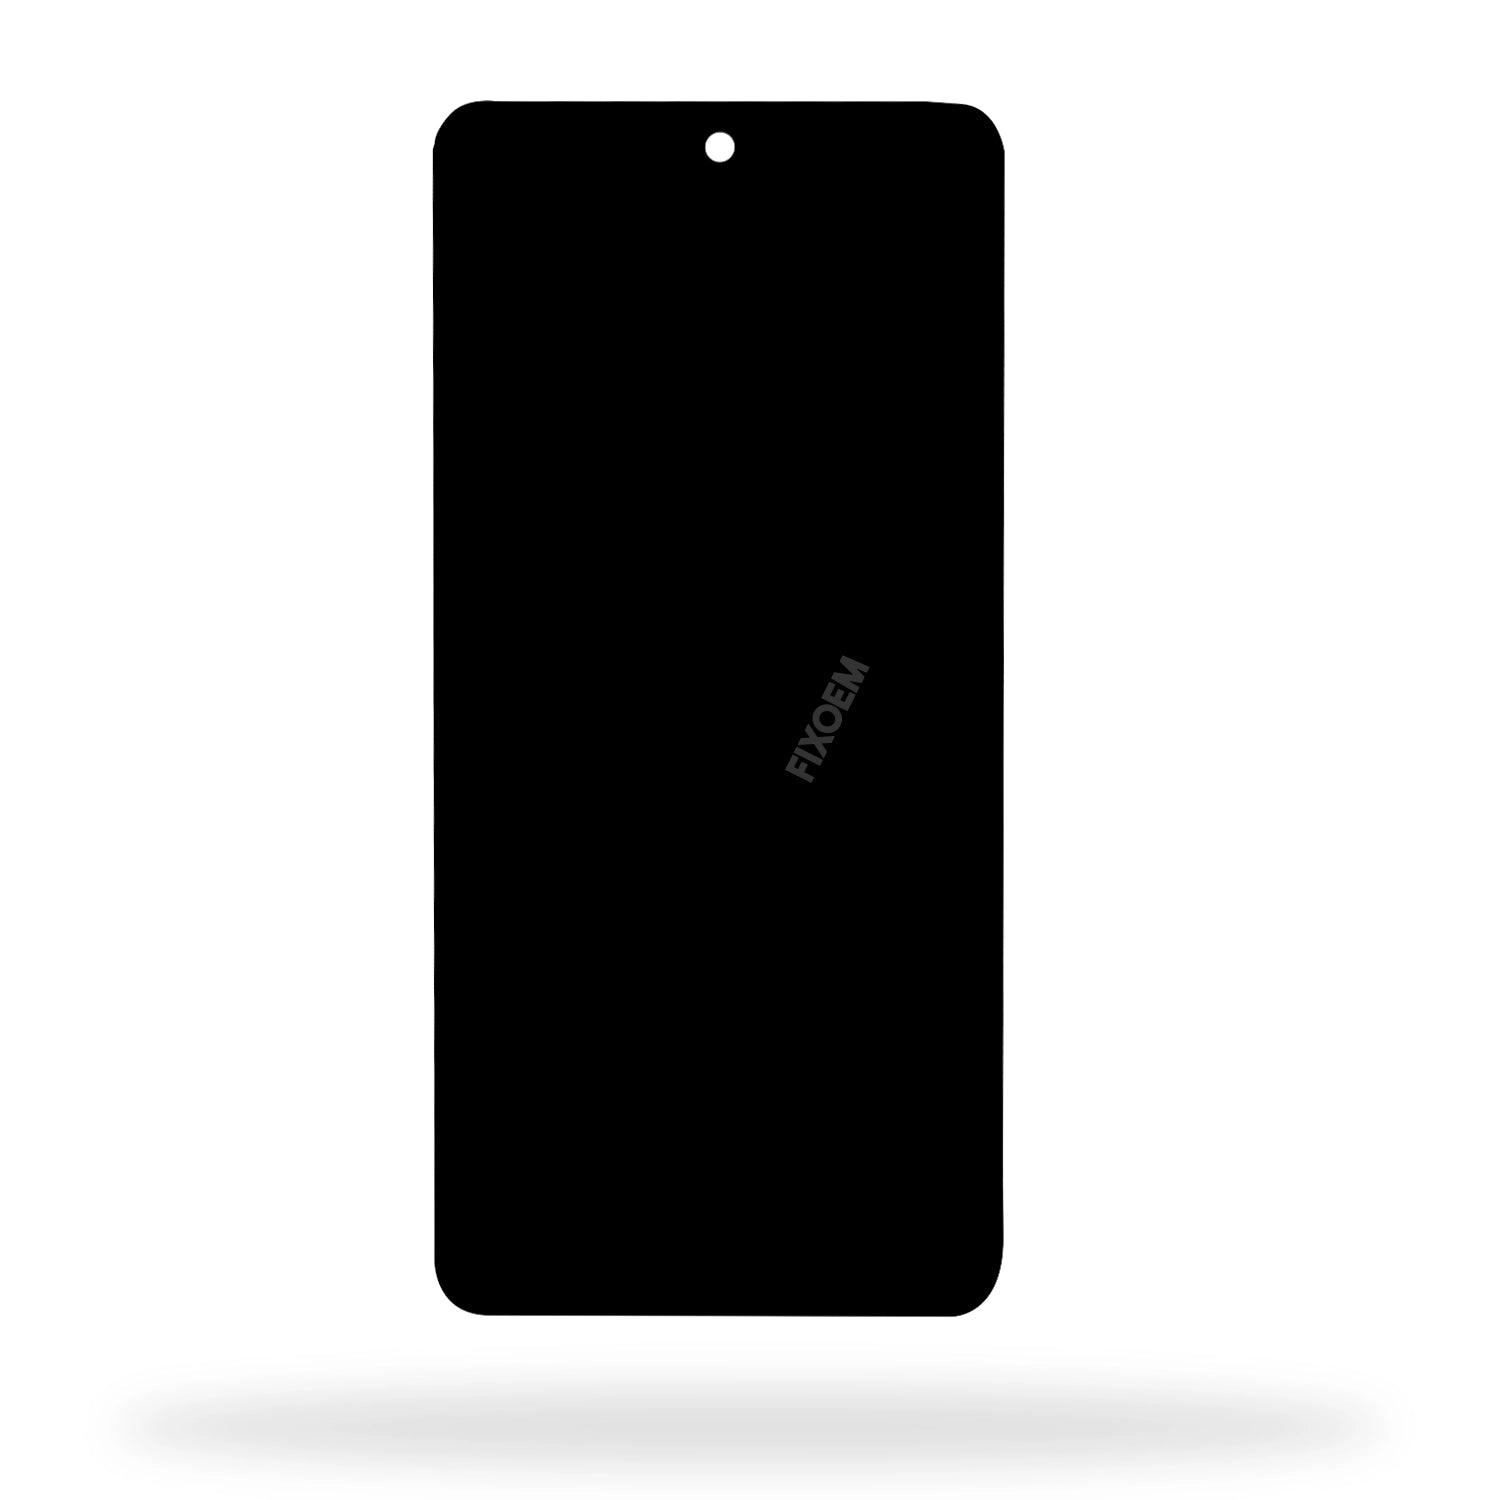 Display Huawei Nova 8 Oled Ang-lx2 a solo $ 830.00 Refaccion y puestos celulares, refurbish y microelectronica.- FixOEM